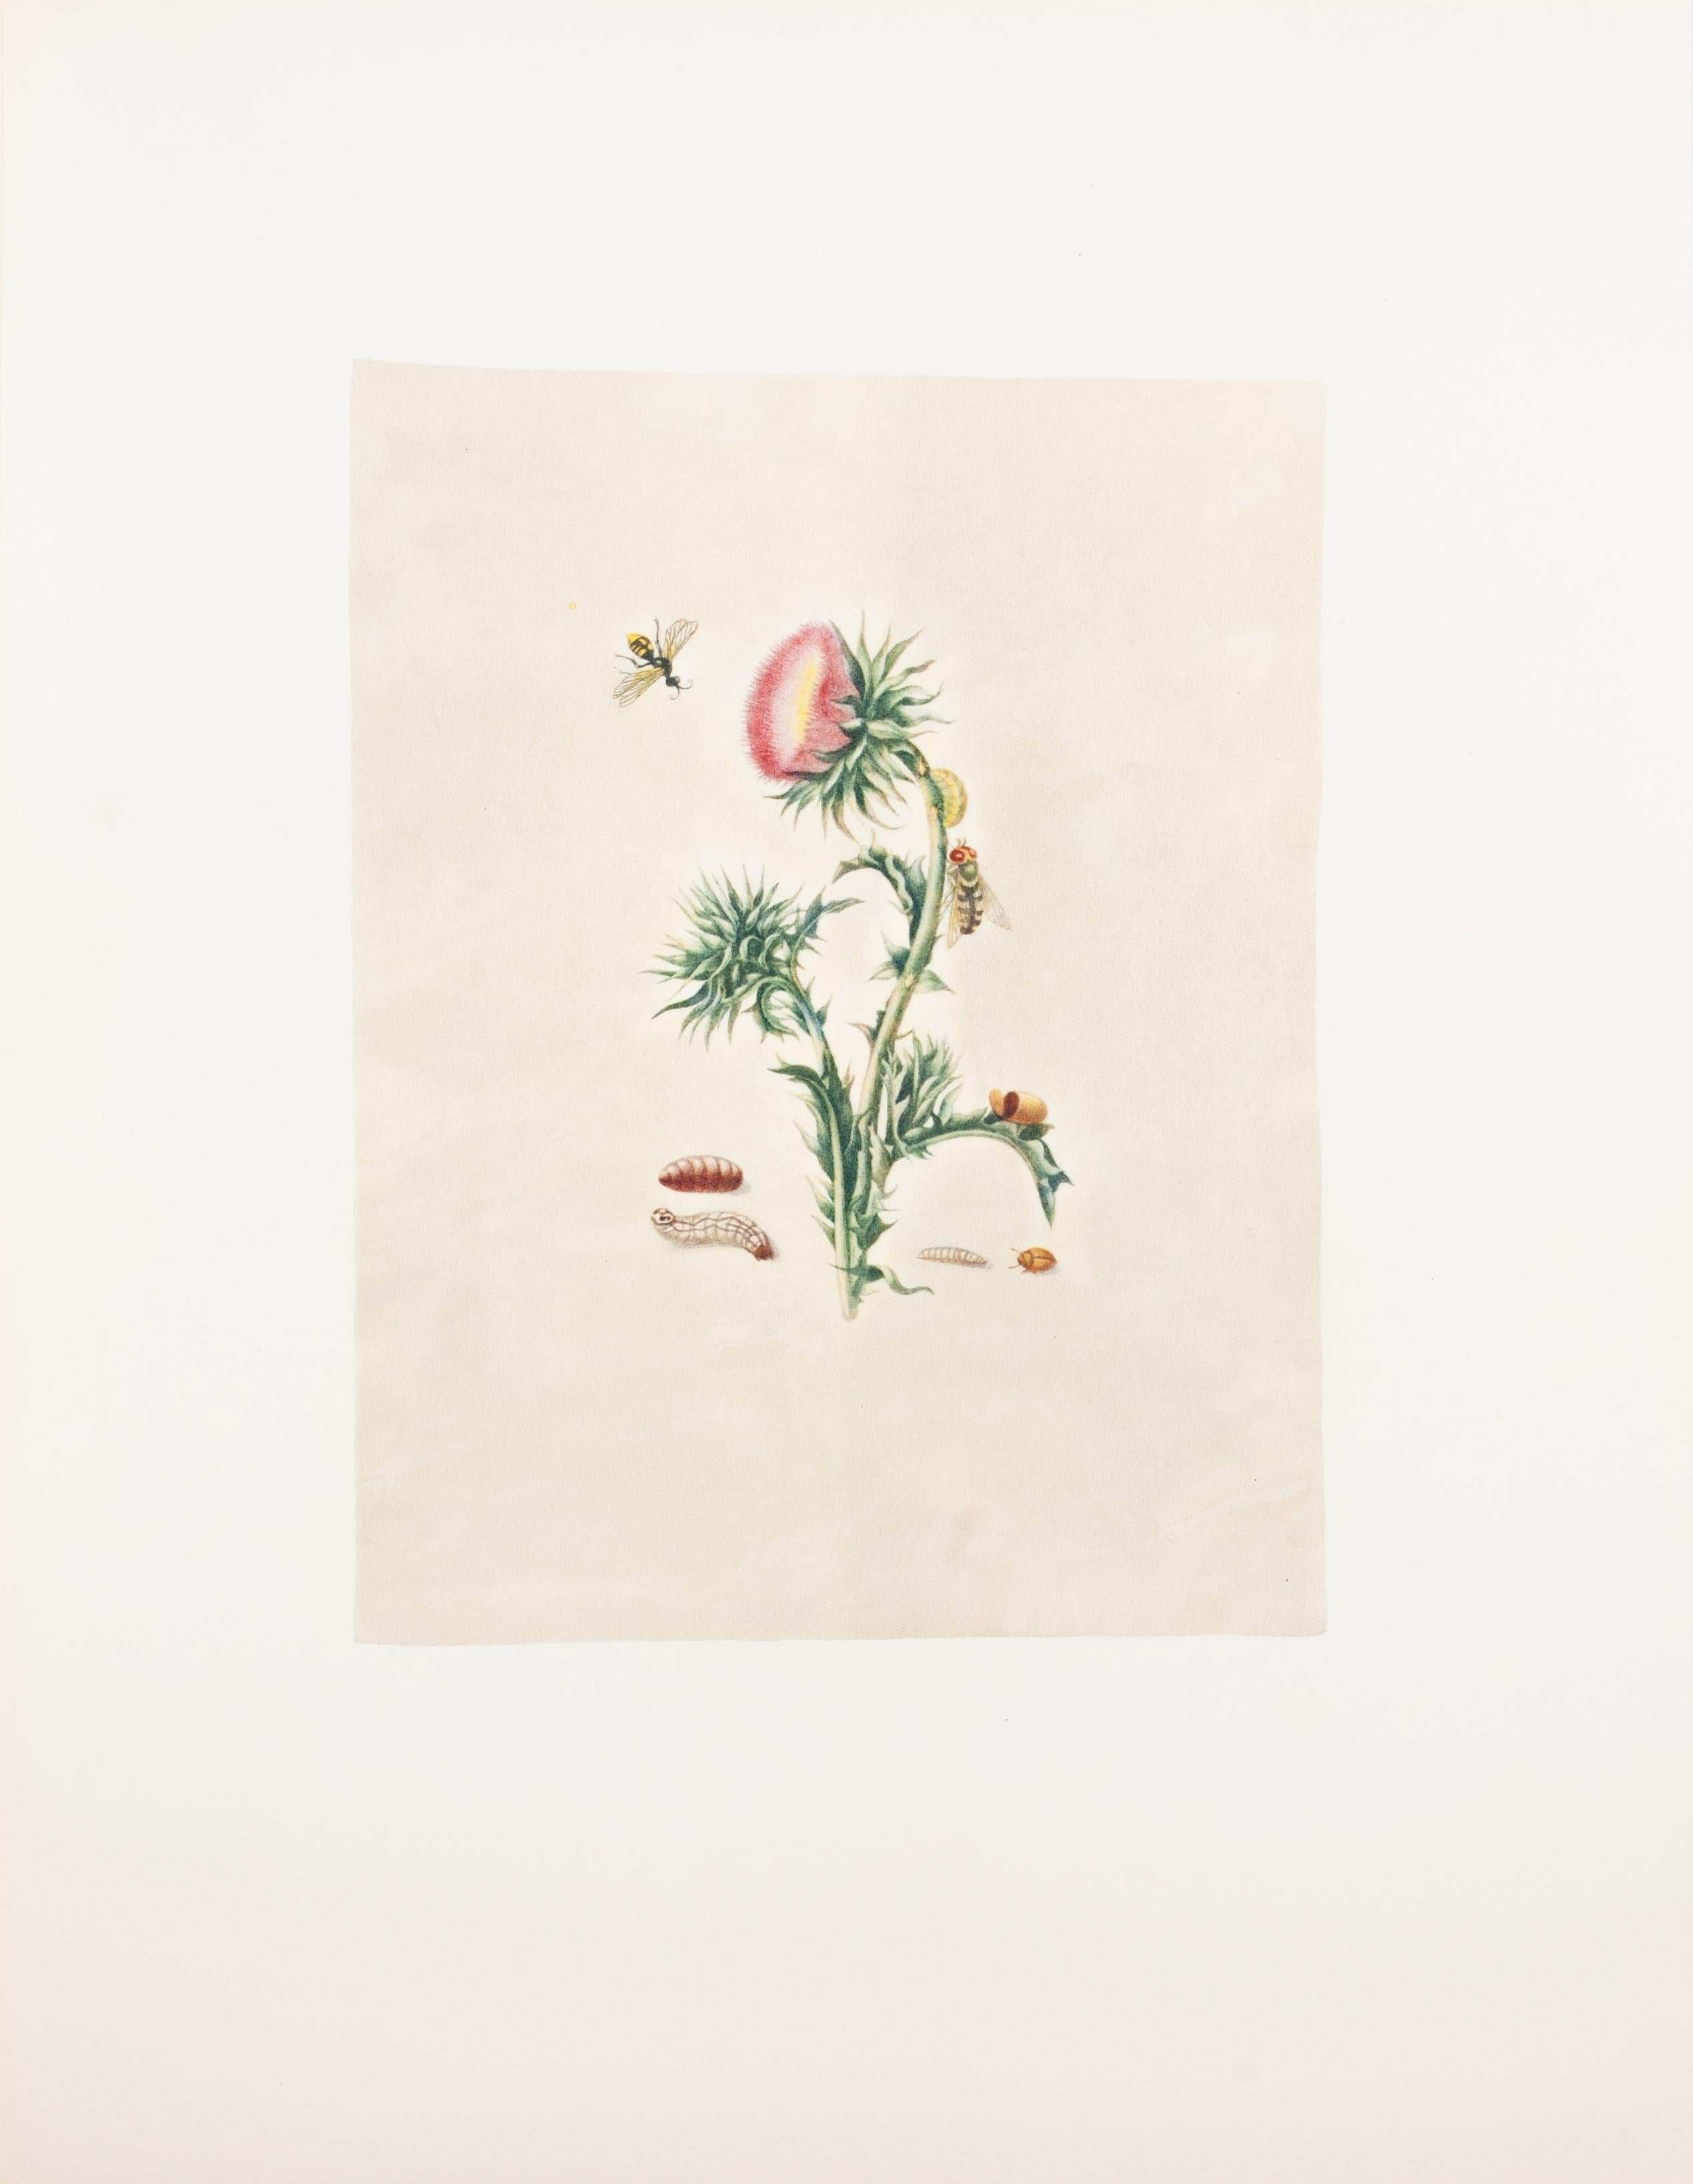 38. Moschusdistel, Syrphidenfliege – Print von Maria Sybilla Merian